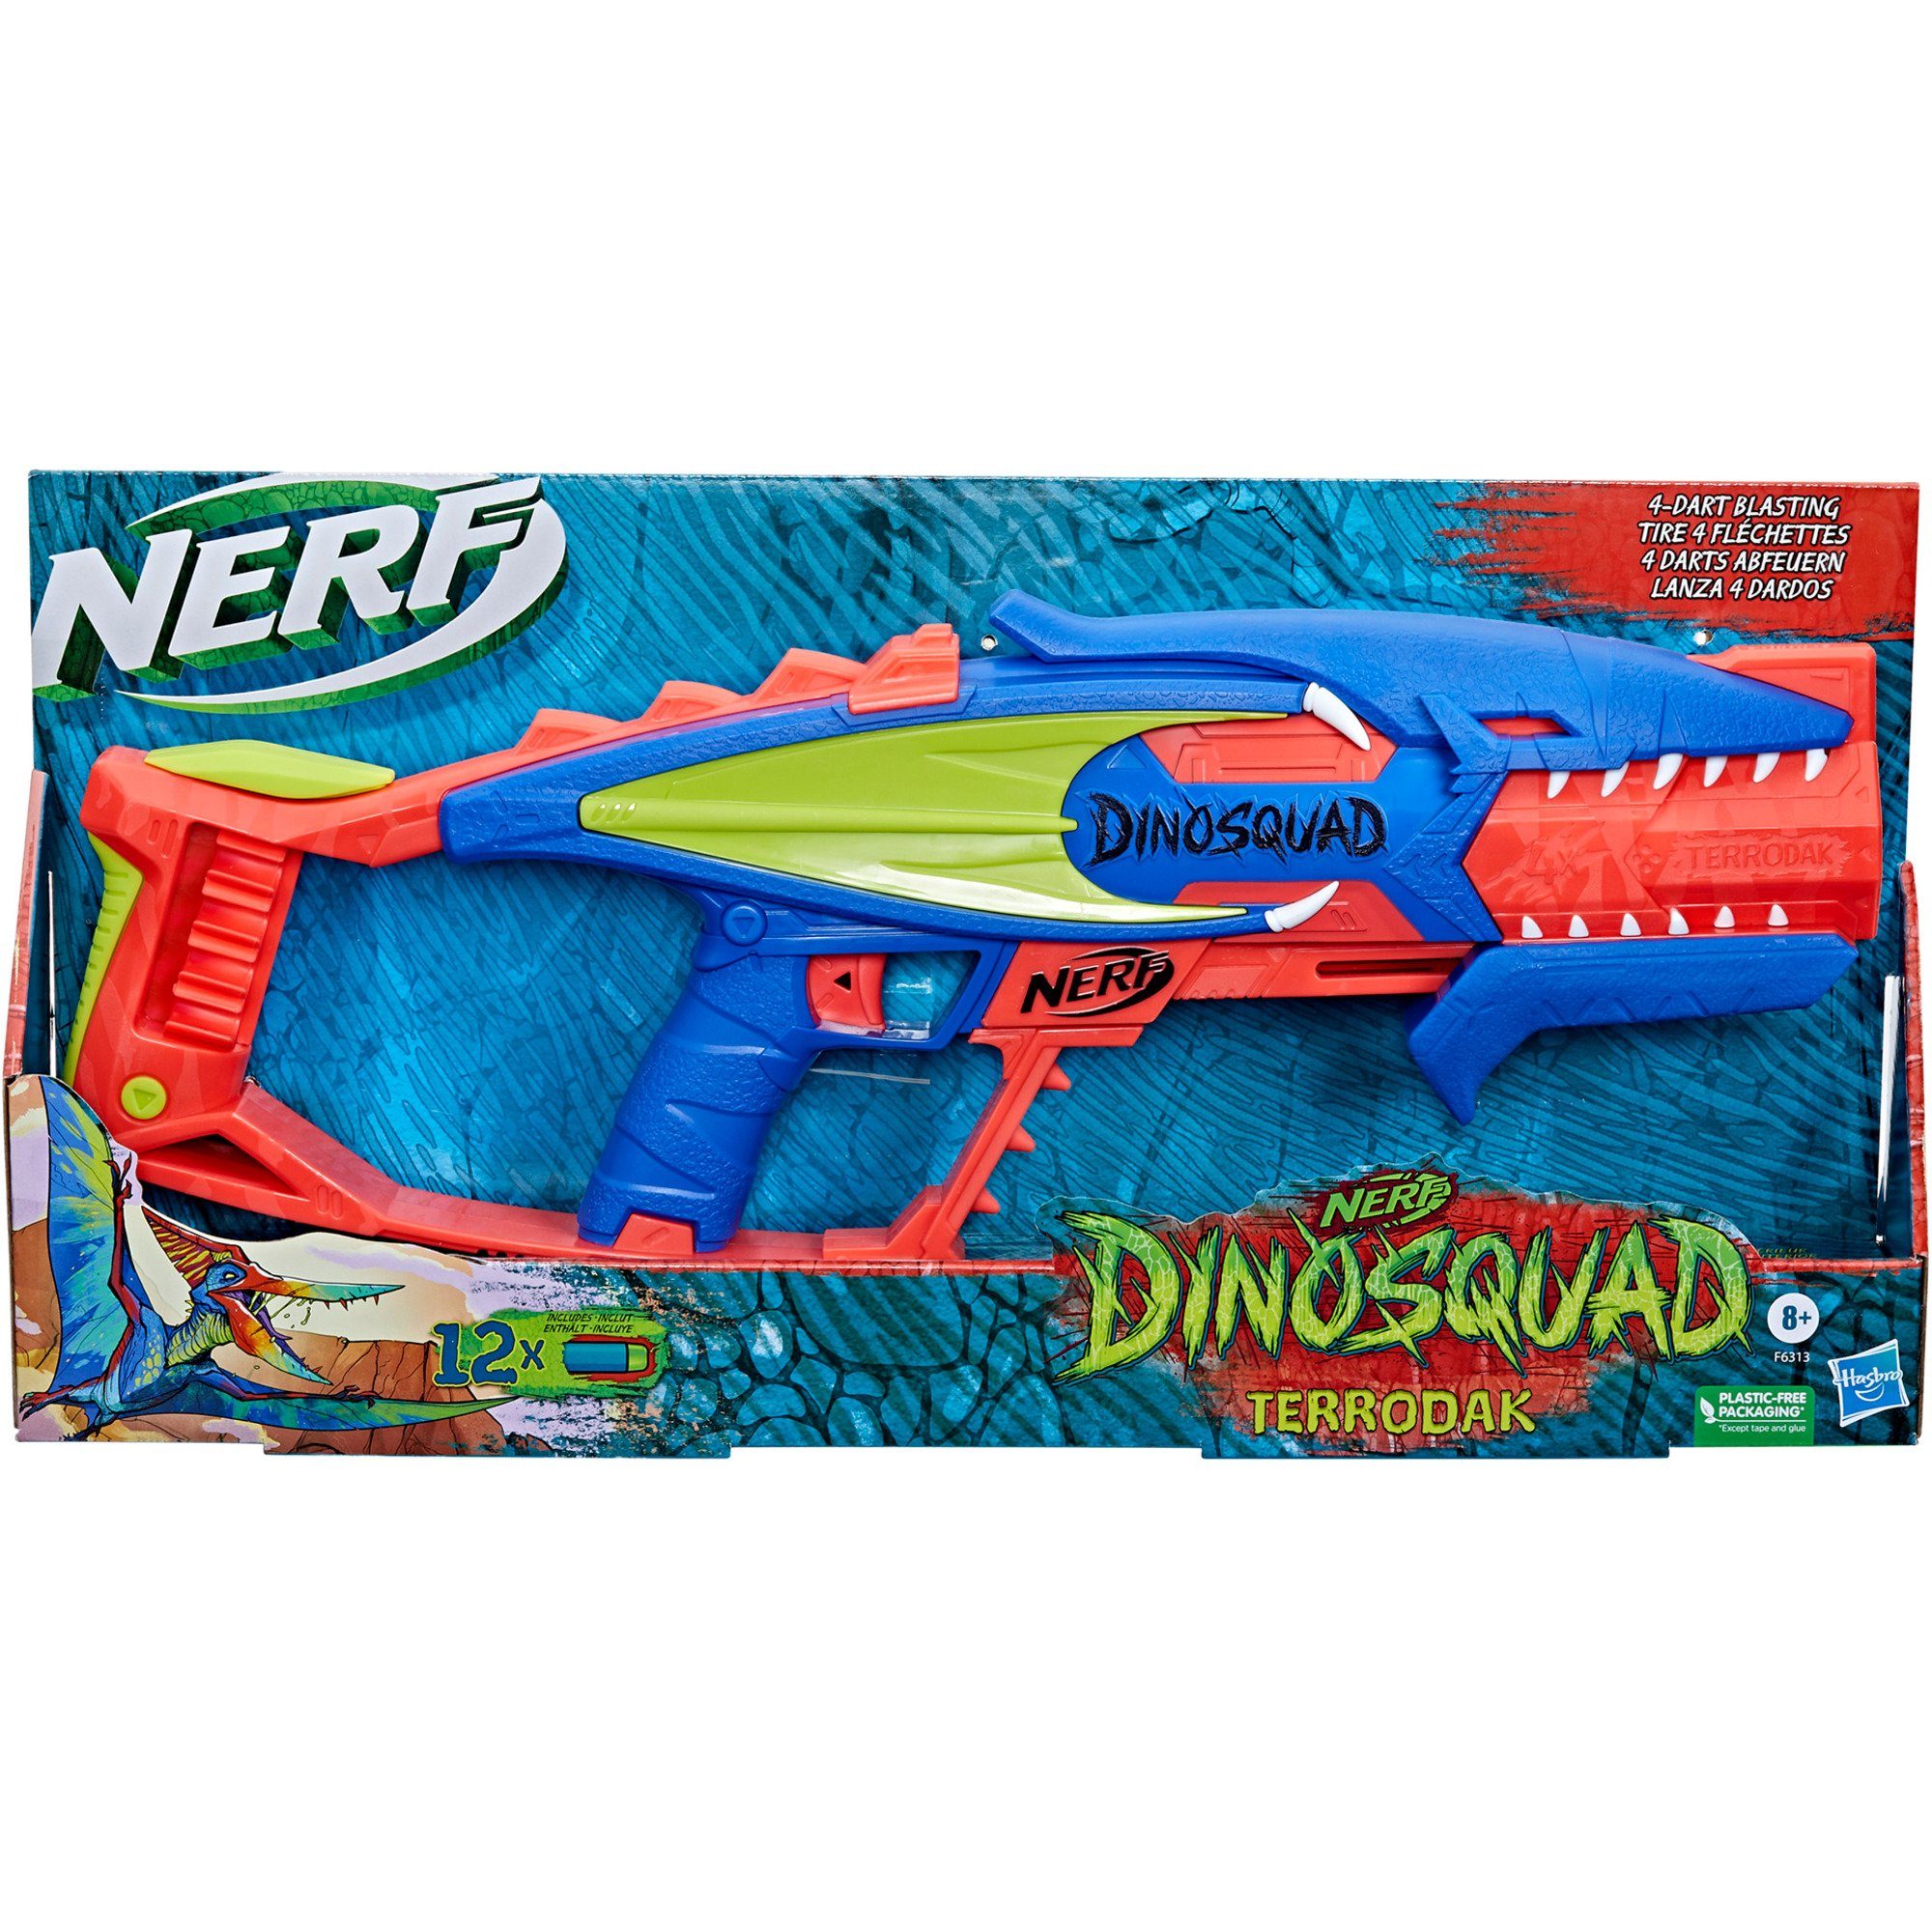 Nerf Dartpfeil Nerf Hasbro Gun Hasbro DinoSquad Terrodak,